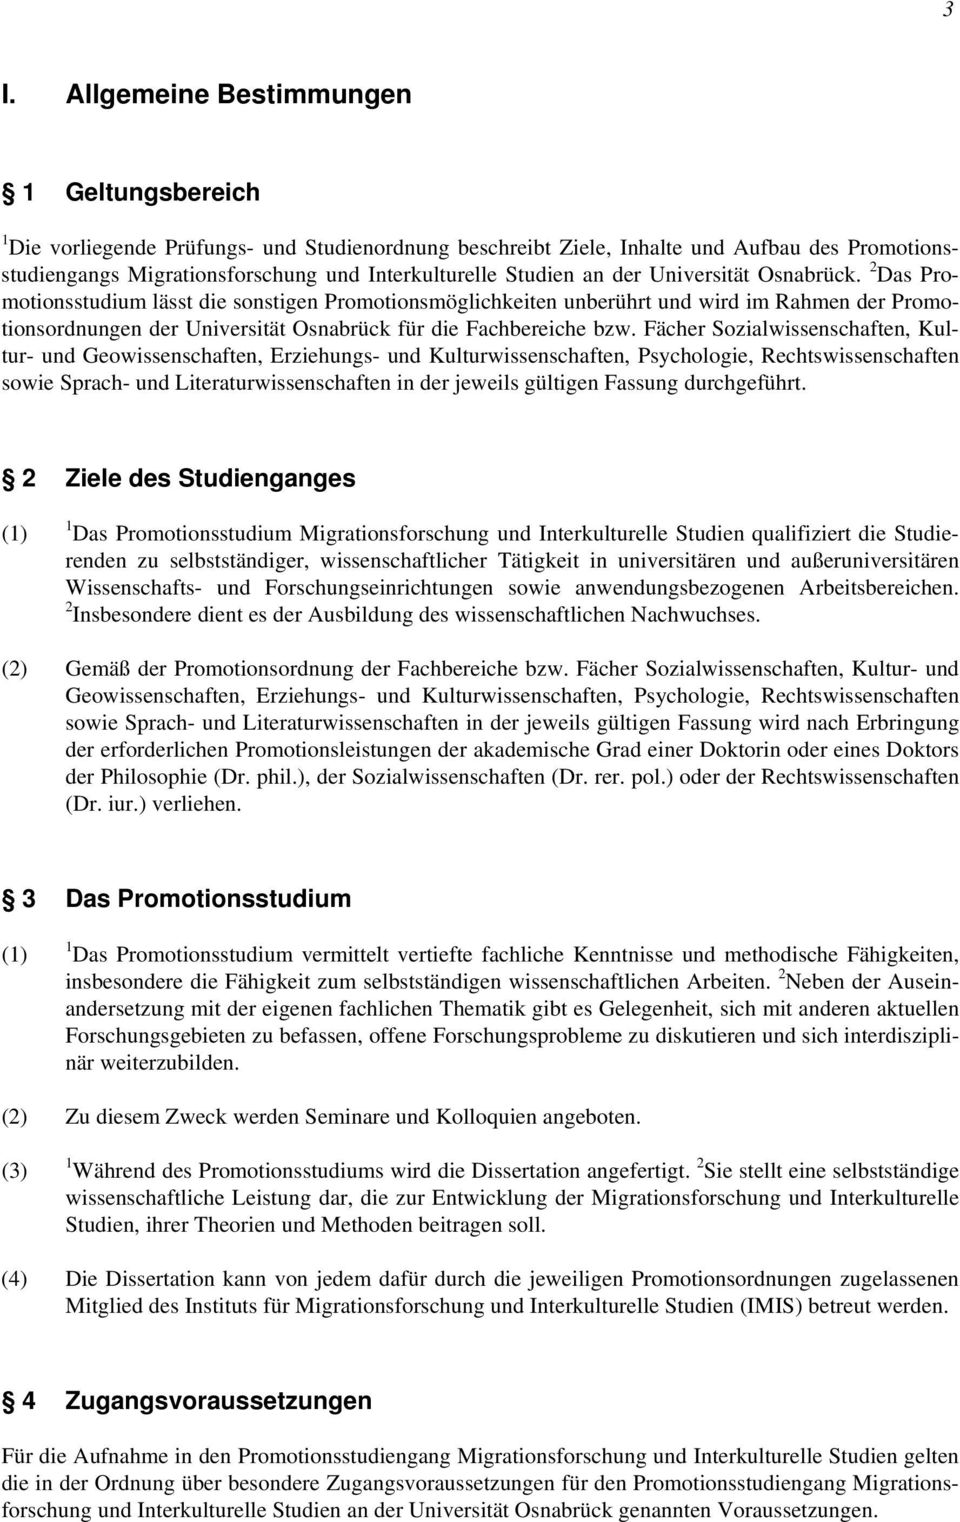 2 Das Promotionsstudium lässt die sonstigen Promotionsmöglichkeiten unberührt und wird im Rahmen der Promotionsordnungen der Universität Osnabrück für die Fachbereiche bzw.